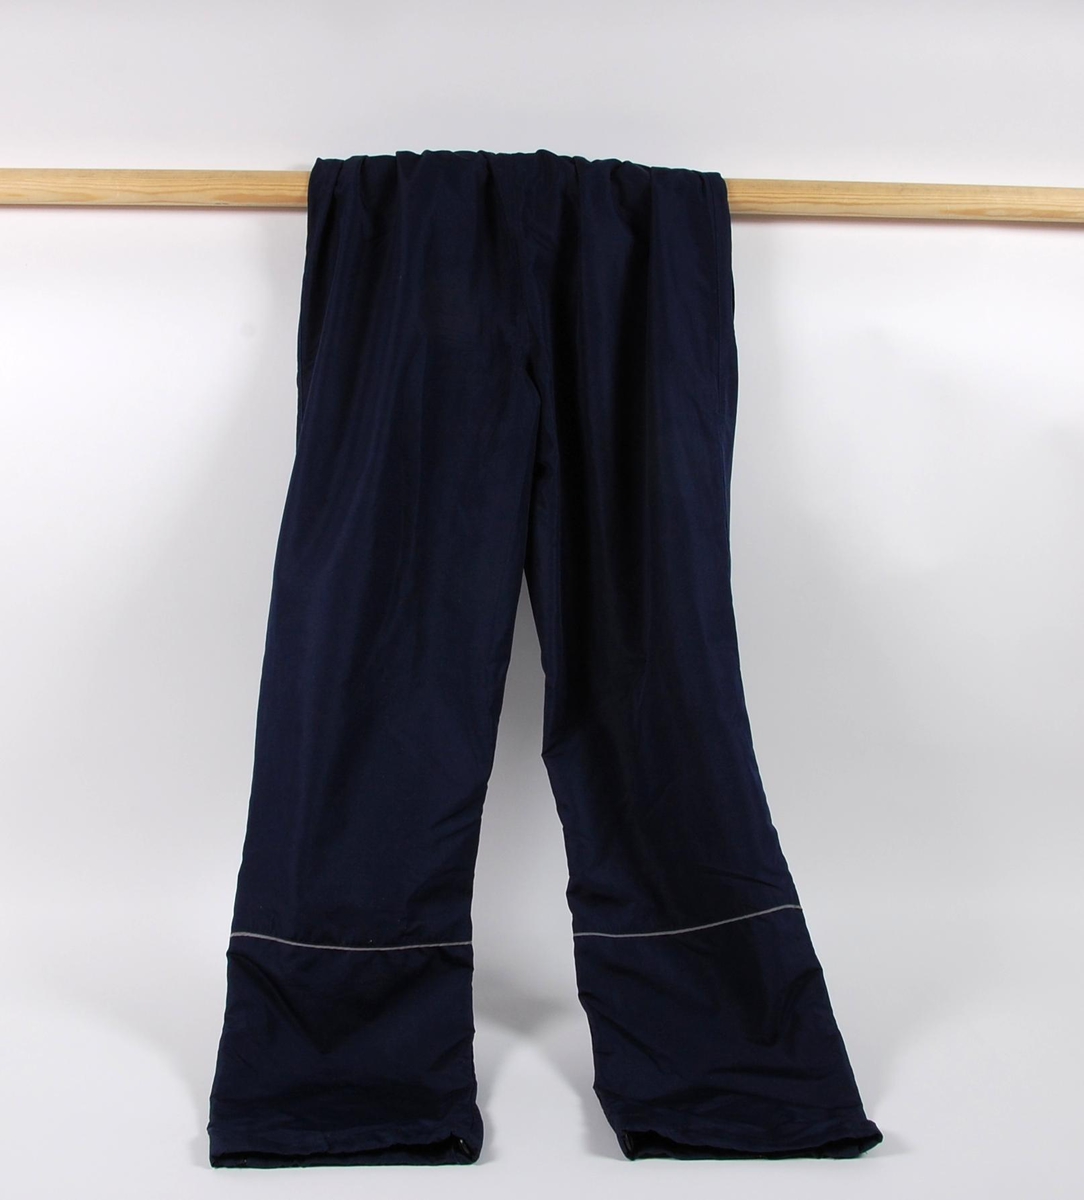 Blå overtrekksbukse med logo for UMBRO. Buksen har glidelås nederst ved hver ben, og refleksstriper på venstre ben. Buksestørrelsen er S.